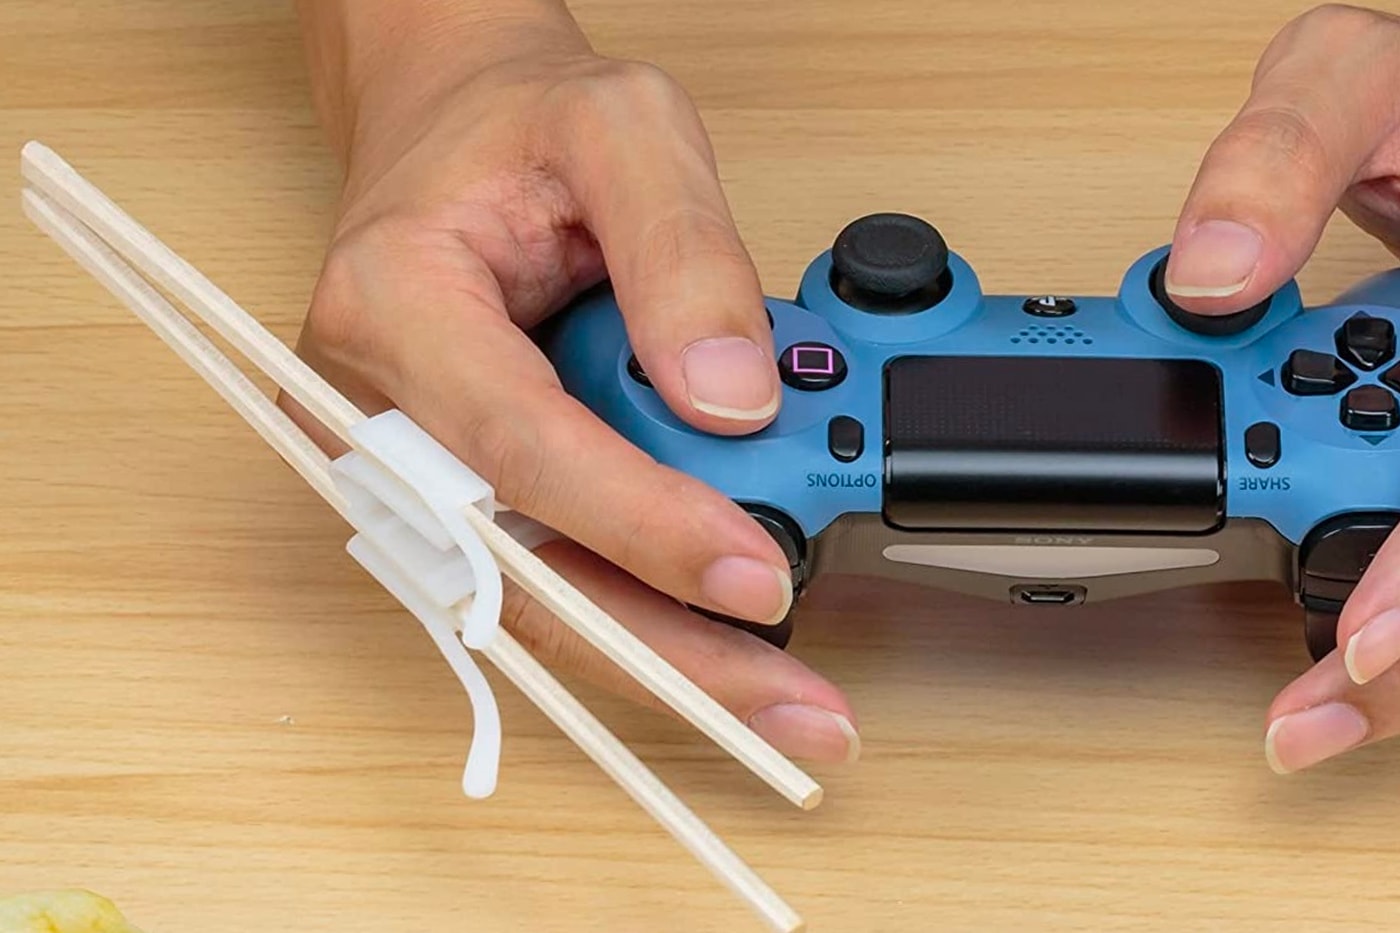 日本品牌 B’full 正式推出「電玩適用」筷子配件